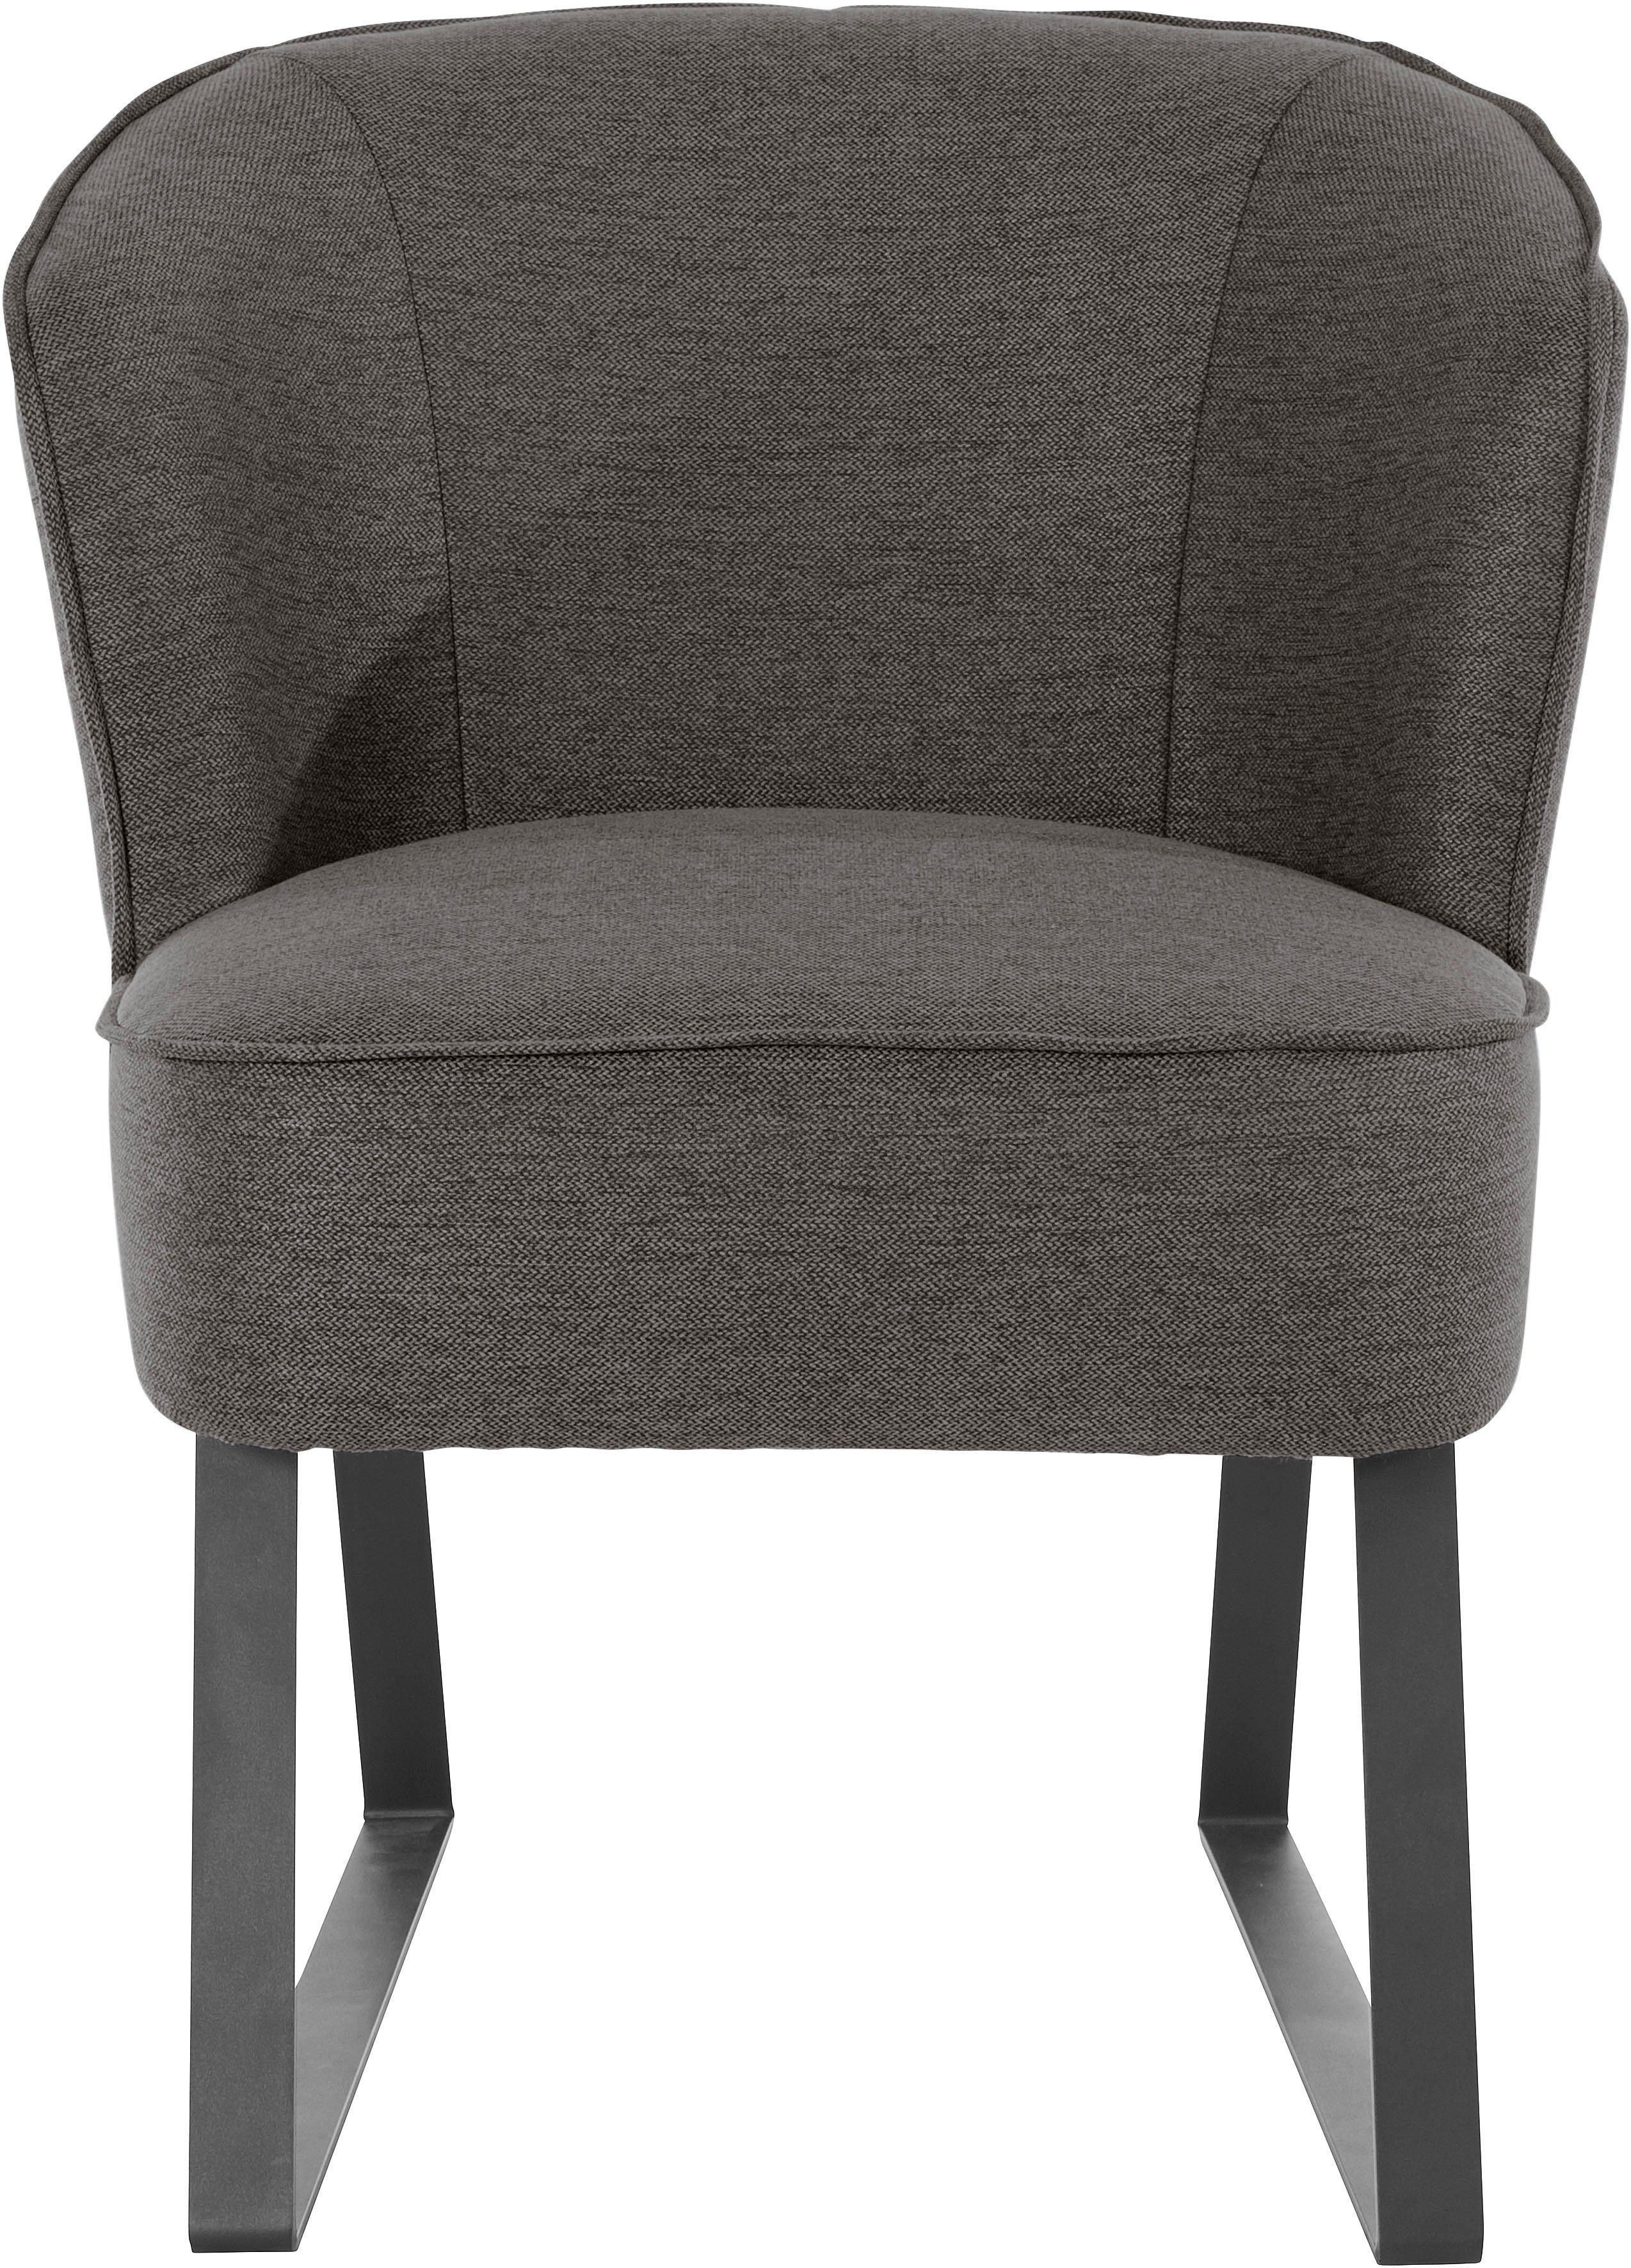 exxpo - sofa fashion Sessel Americano, mit Keder und Metallfüßen, Bezug in verschiedenen Qualitäten, 1 Stck.